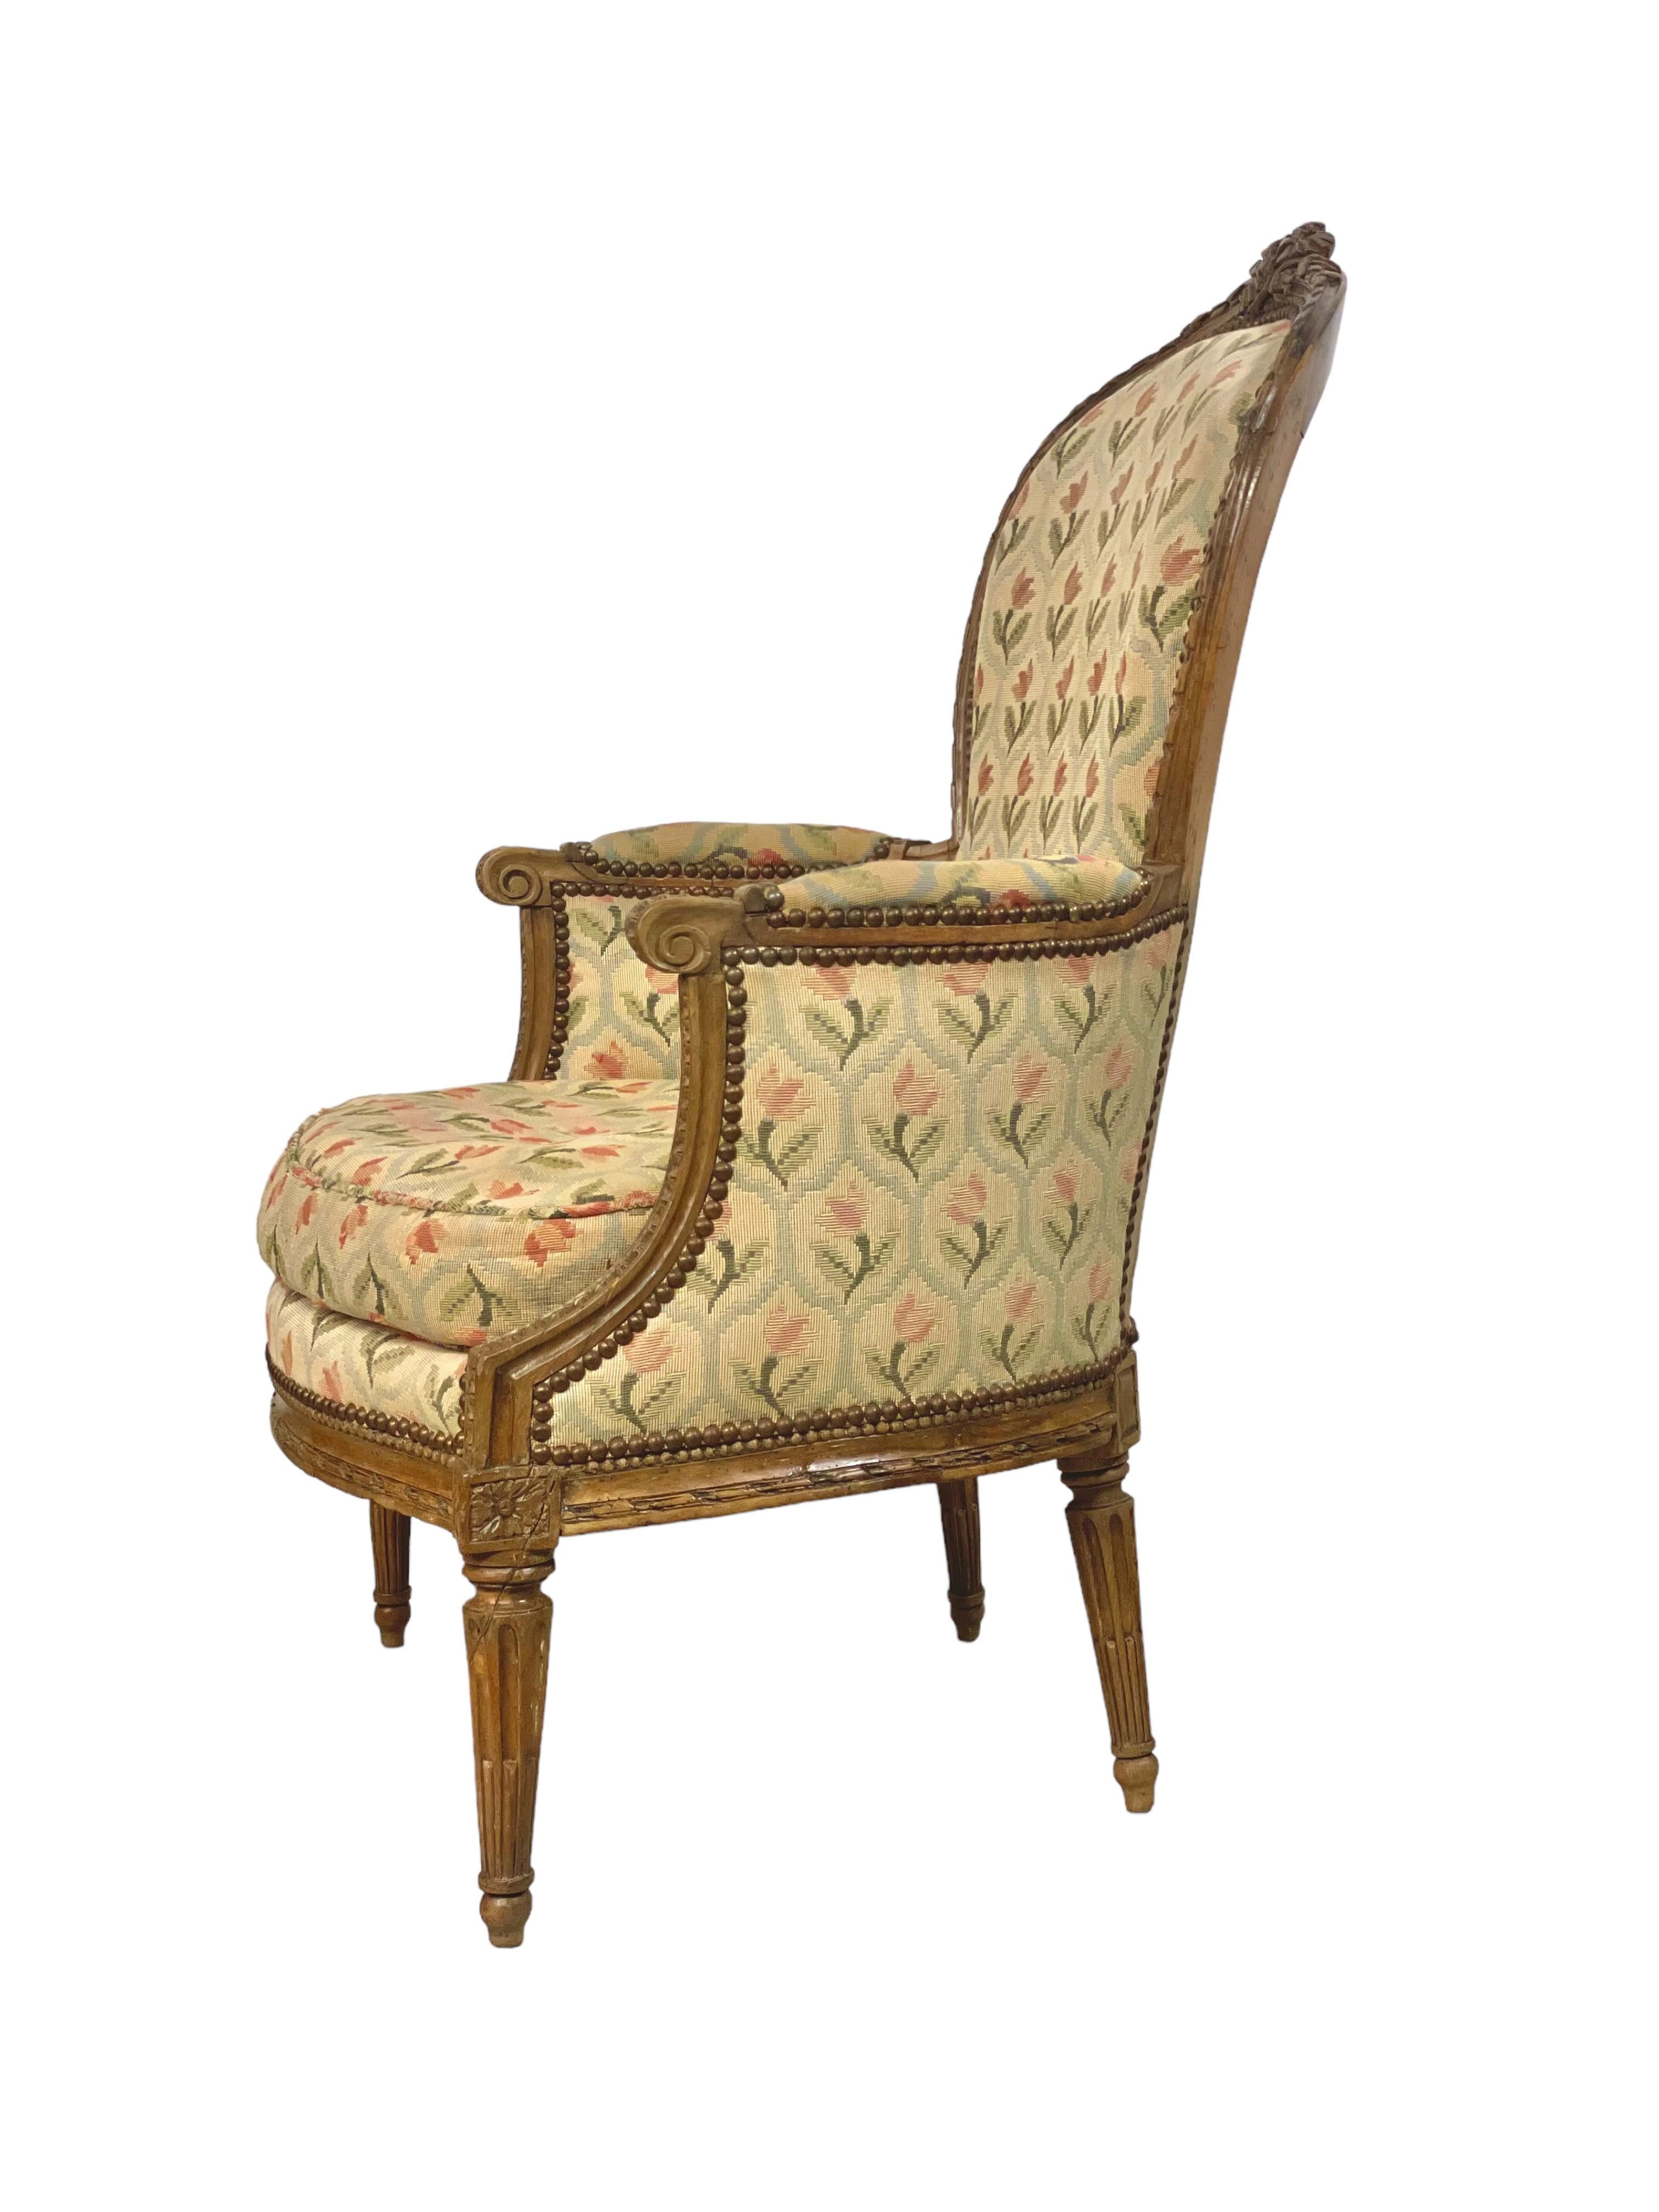 Dieser sehr dekorative Louis XVI Bergère Sessel ist aus Eichenholz gefertigt und stammt aus dem 18. Jahrhundert. Er ist elegant und komfortabel und wurde von Hand geschnitzt und mit außergewöhnlichen Details versehen. Die leicht geschwungene